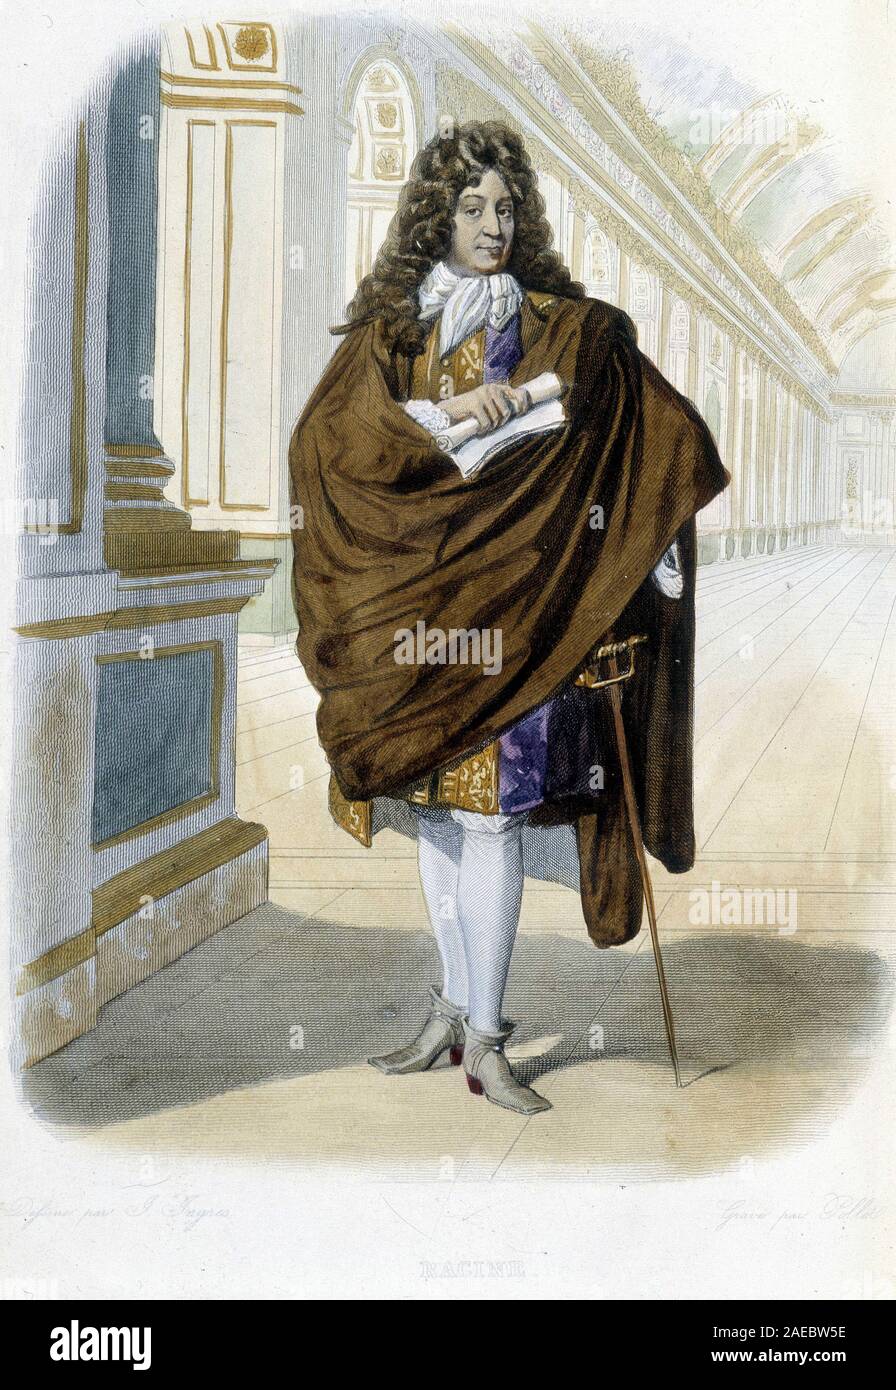 Portrait de Jean Racine, auteur dramatique et poete francais (1639 - 1699)  - dans "Le Plutarque francais", Ed. Mennechet, 1844-47, Paris Photo Stock -  Alamy